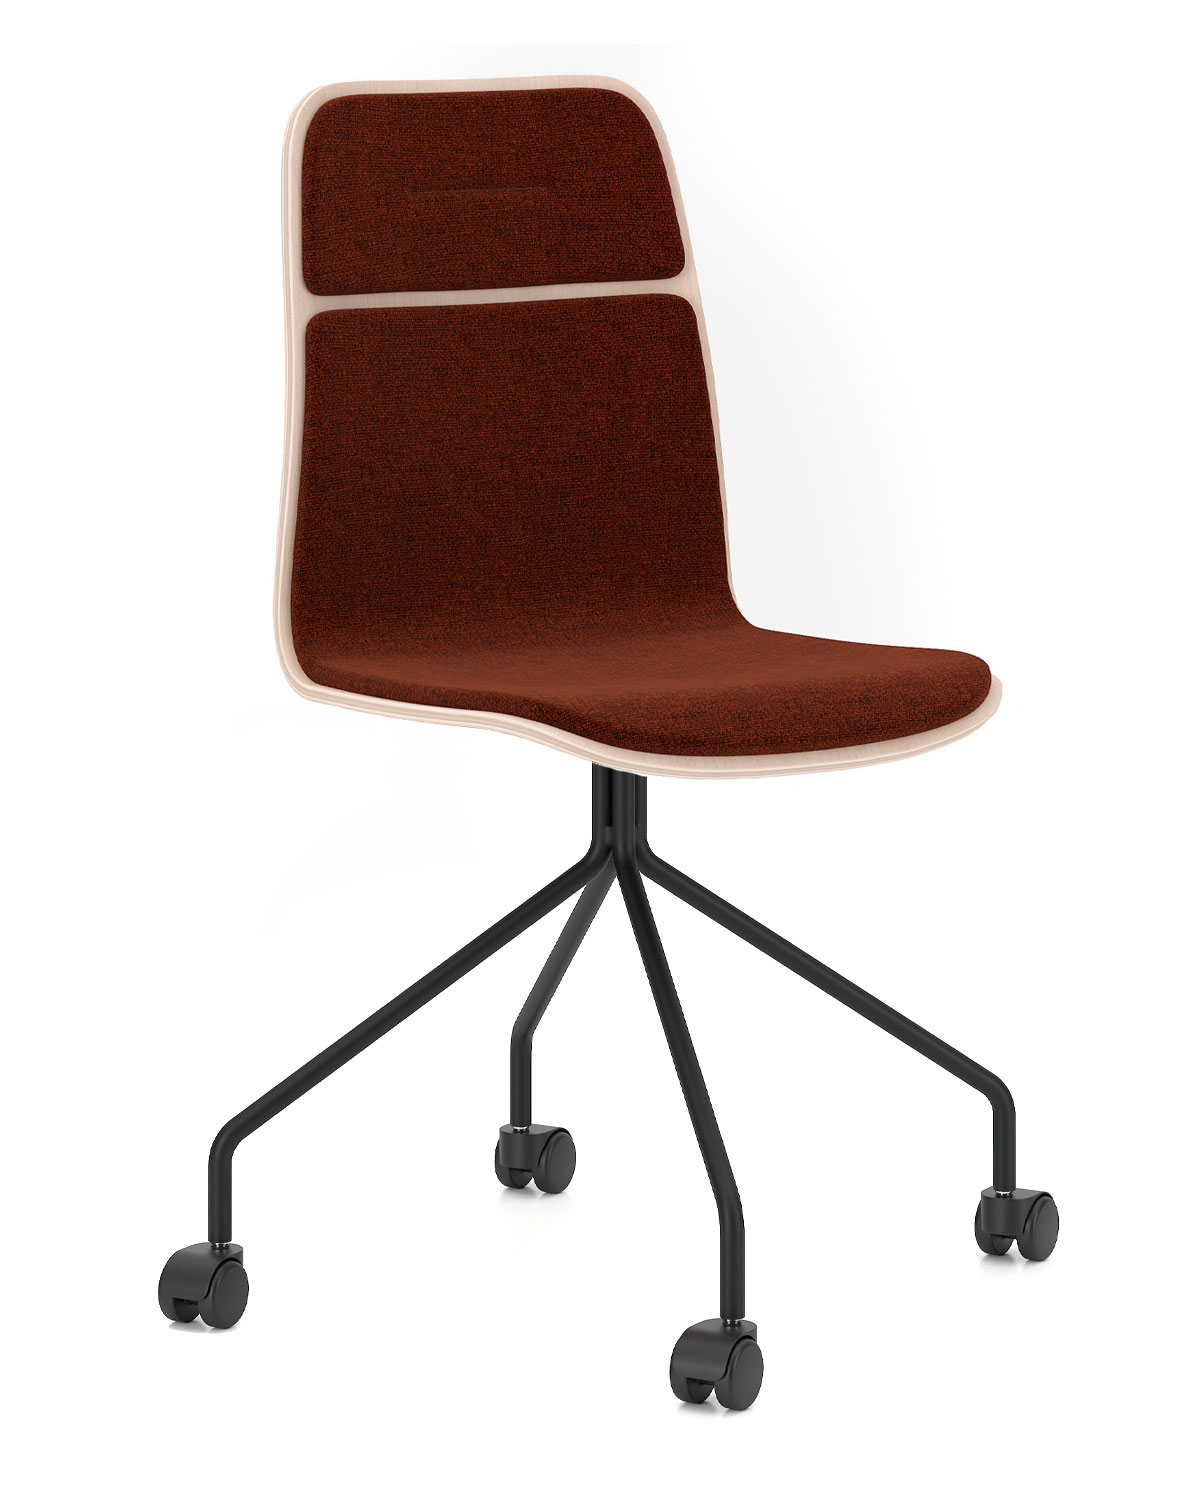 Nowy Styl - Konferenční židle Vapaa 4S W HB s čalouněnými potahy